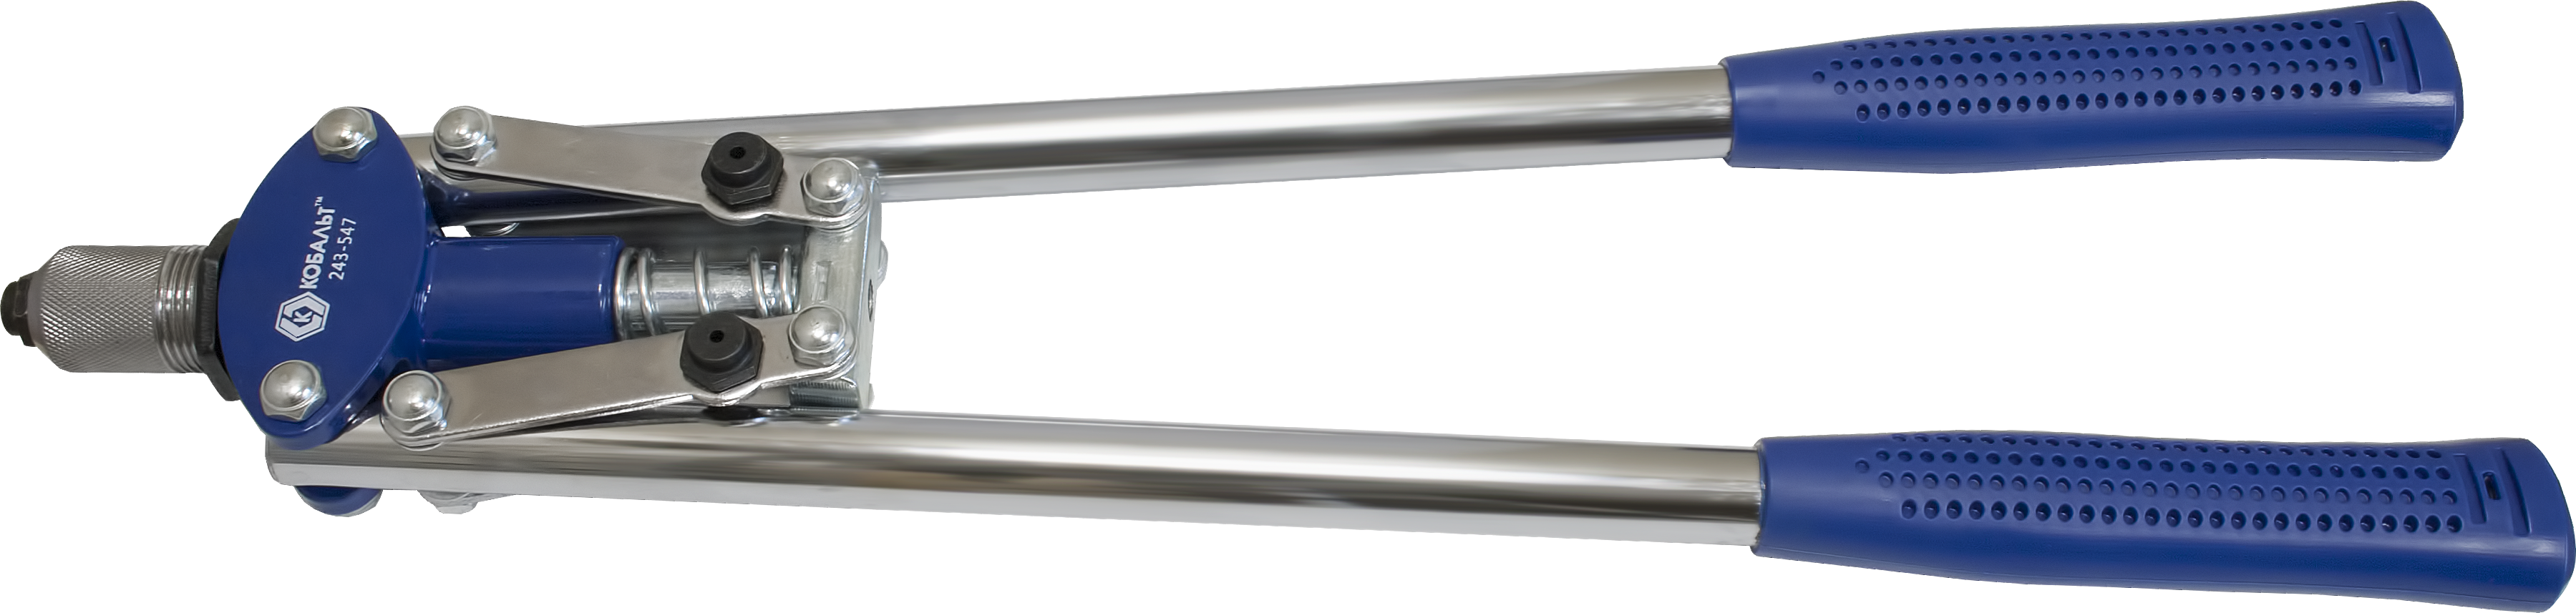 Заклепочник кобальт 430 мм двуручный,заклепки 2,4-3,2-4,0-4,8 мм блистер 